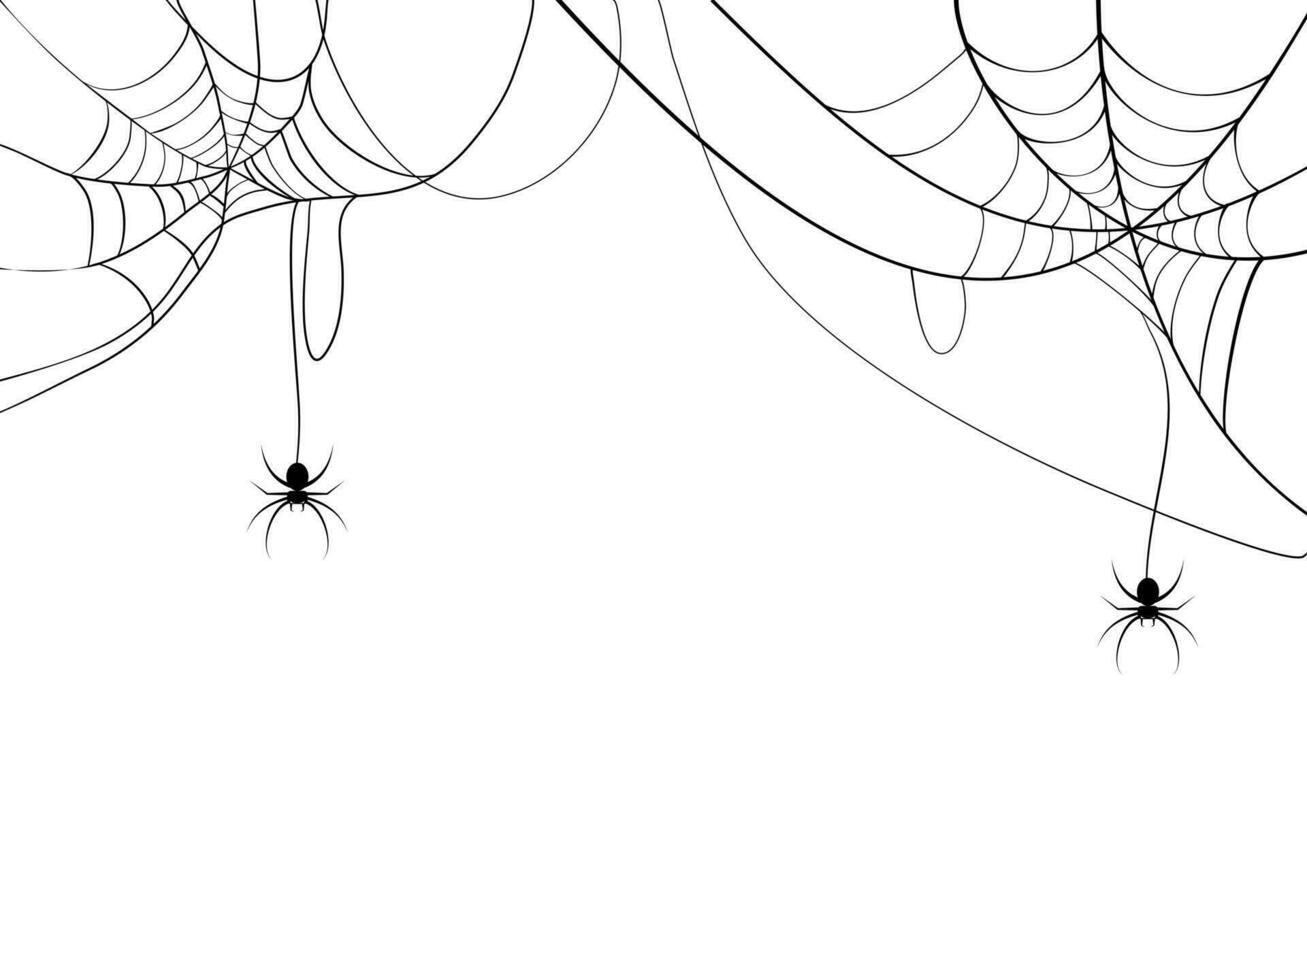 Preto aranha e aranha rede. assustador teia de aranha do dia das Bruxas símbolo. isolado em branco fundo. vetor ilustração